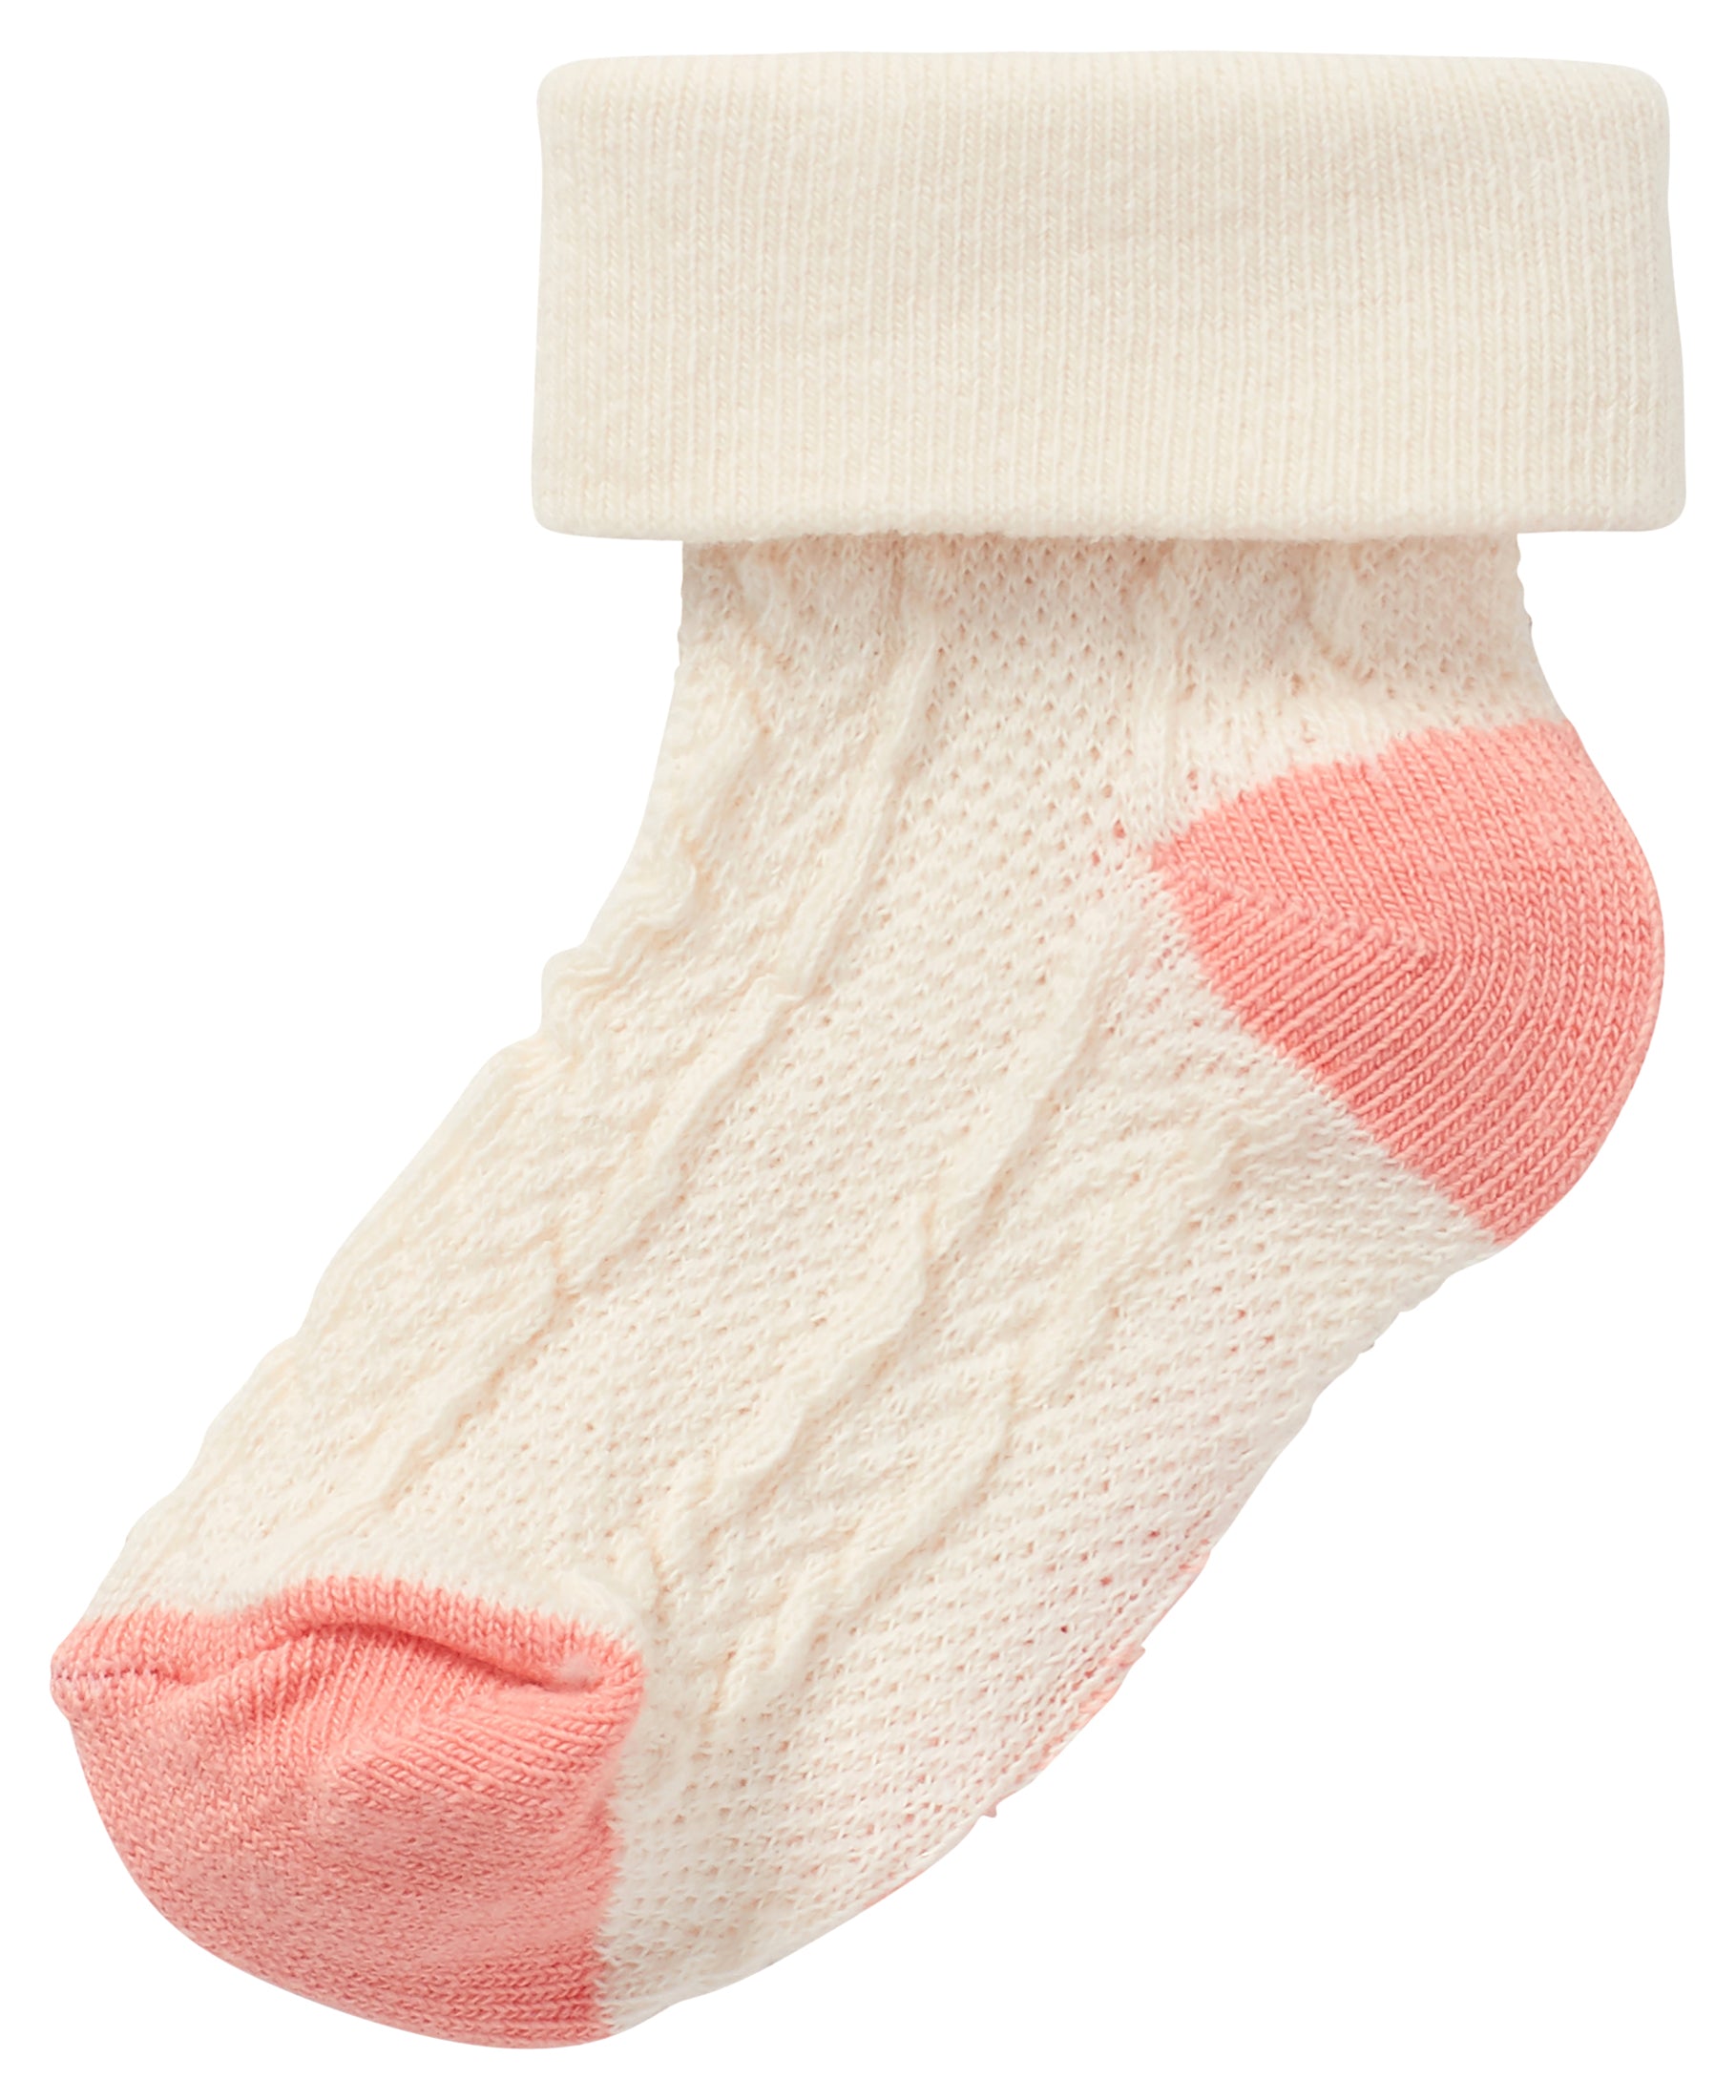 Noppies - 2 paires chaussettes -  Alappuzha, rose et blanc